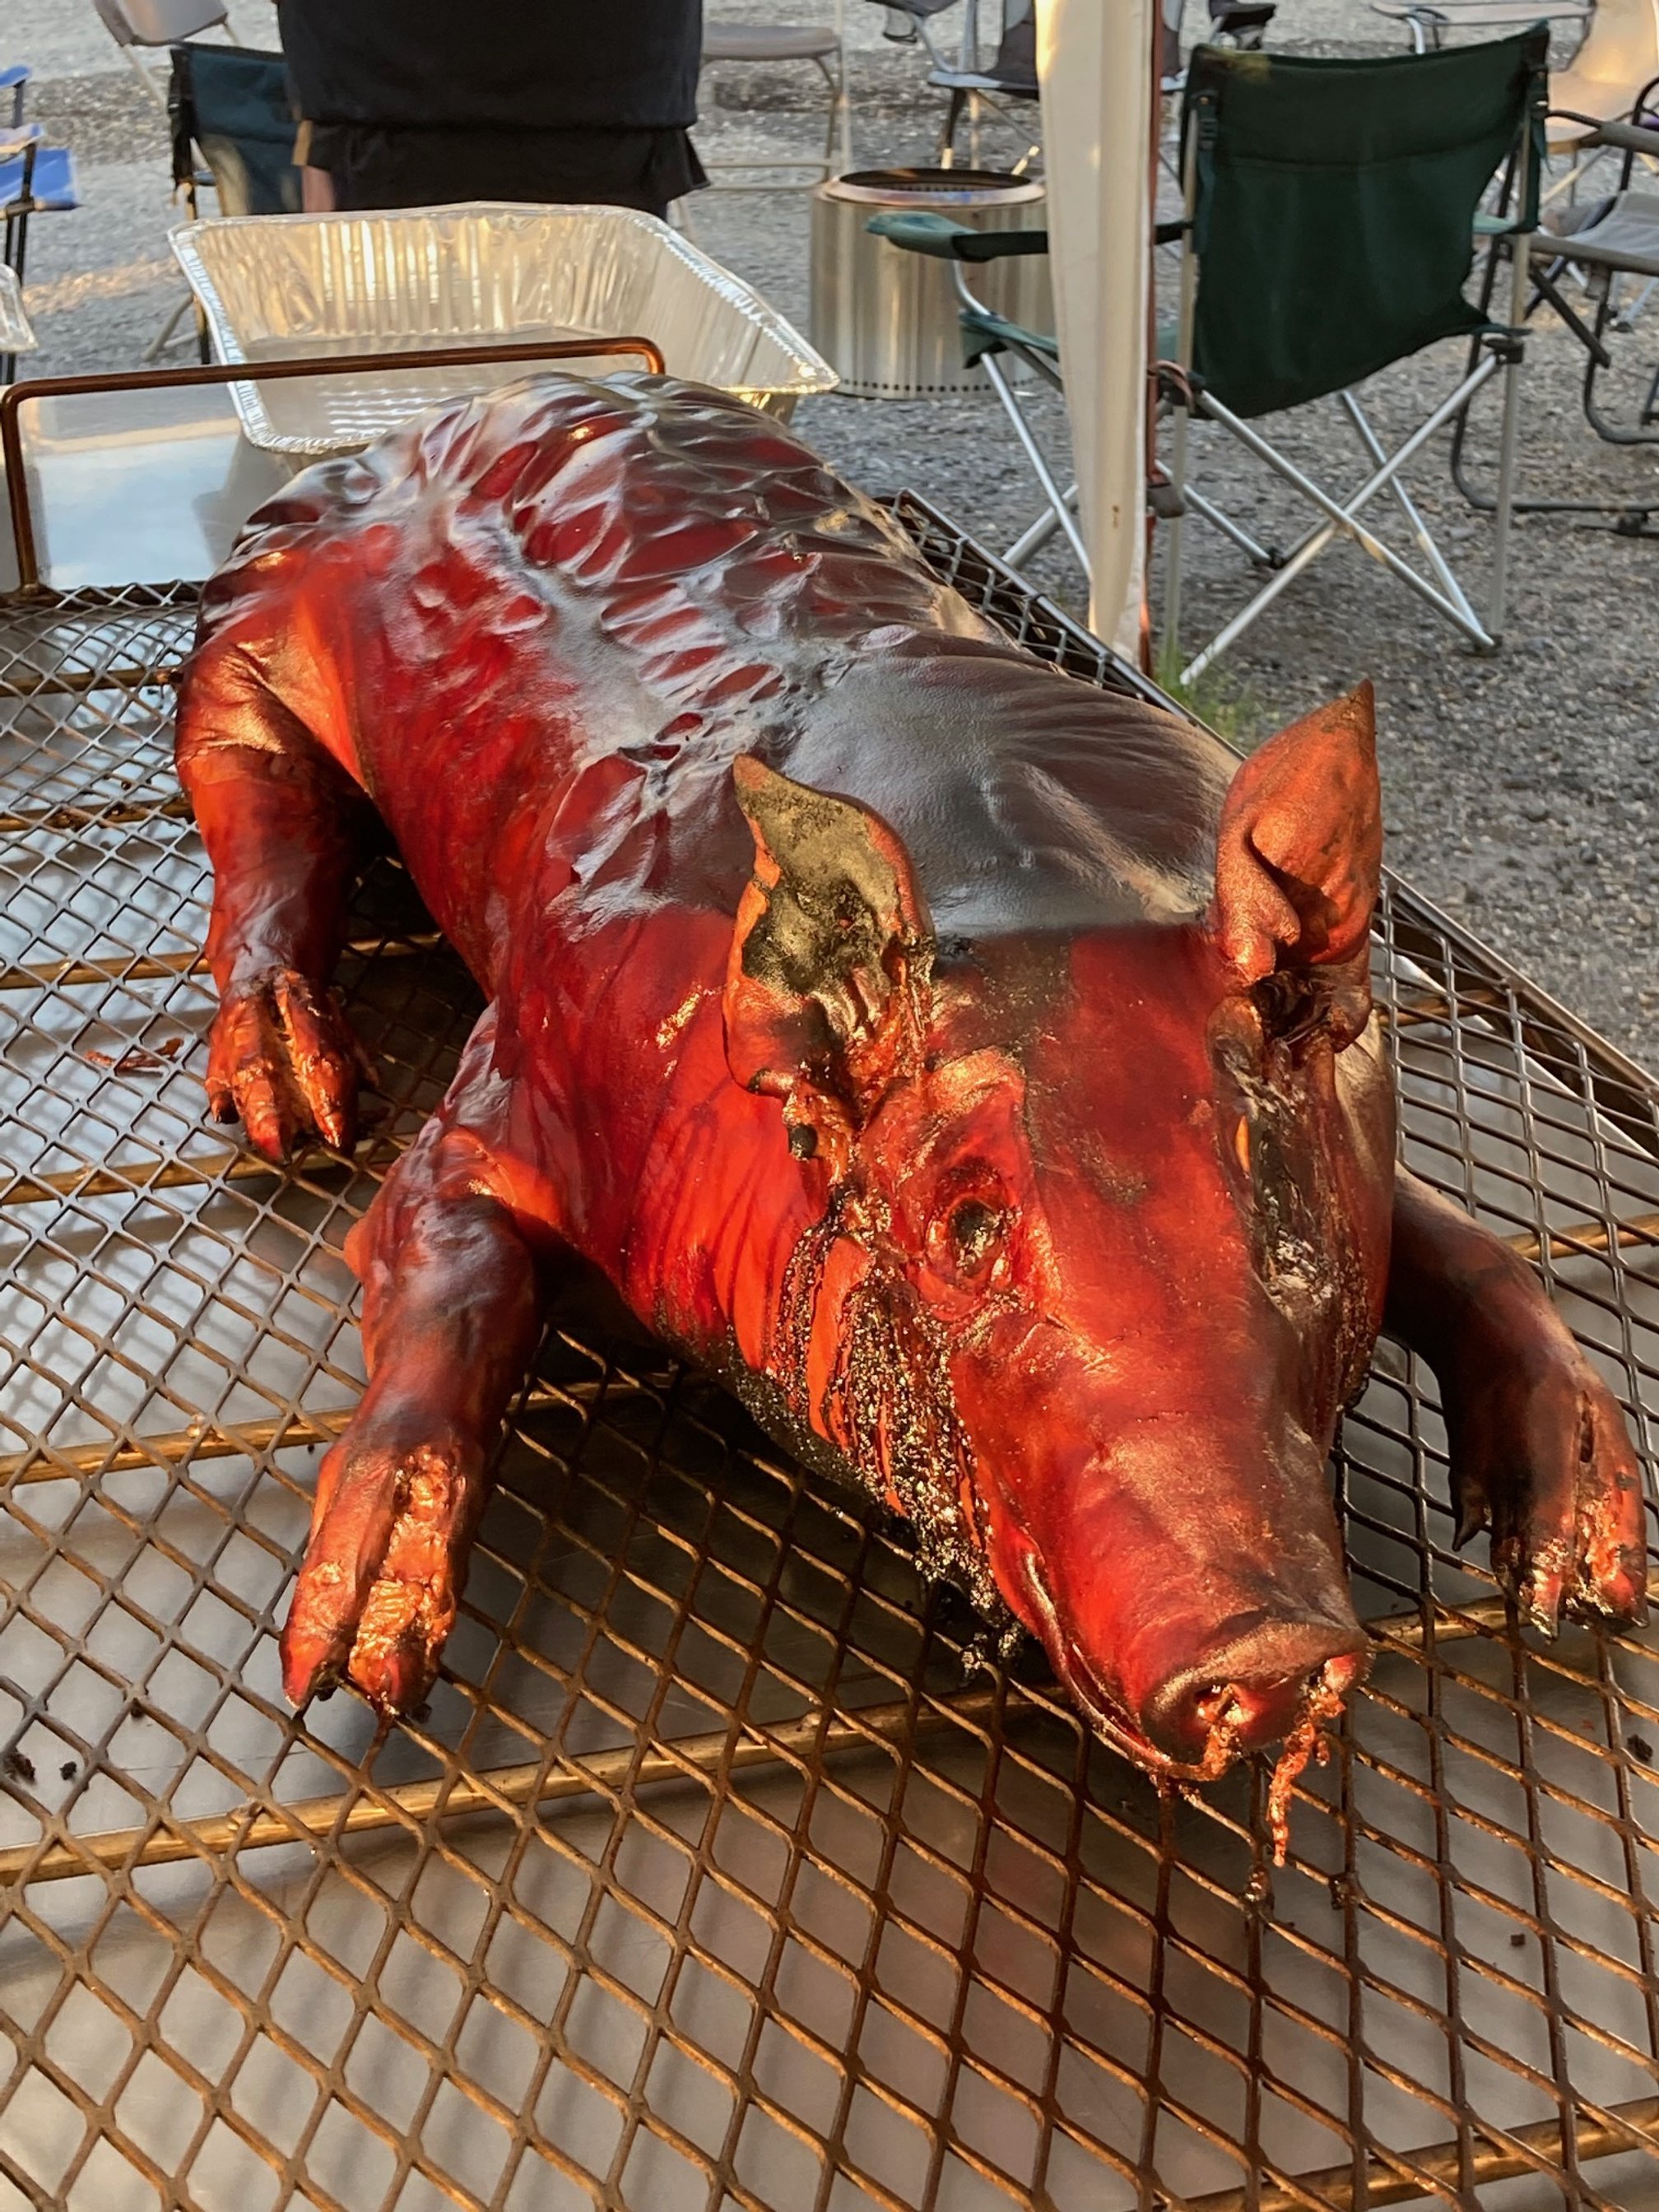 Finished hog